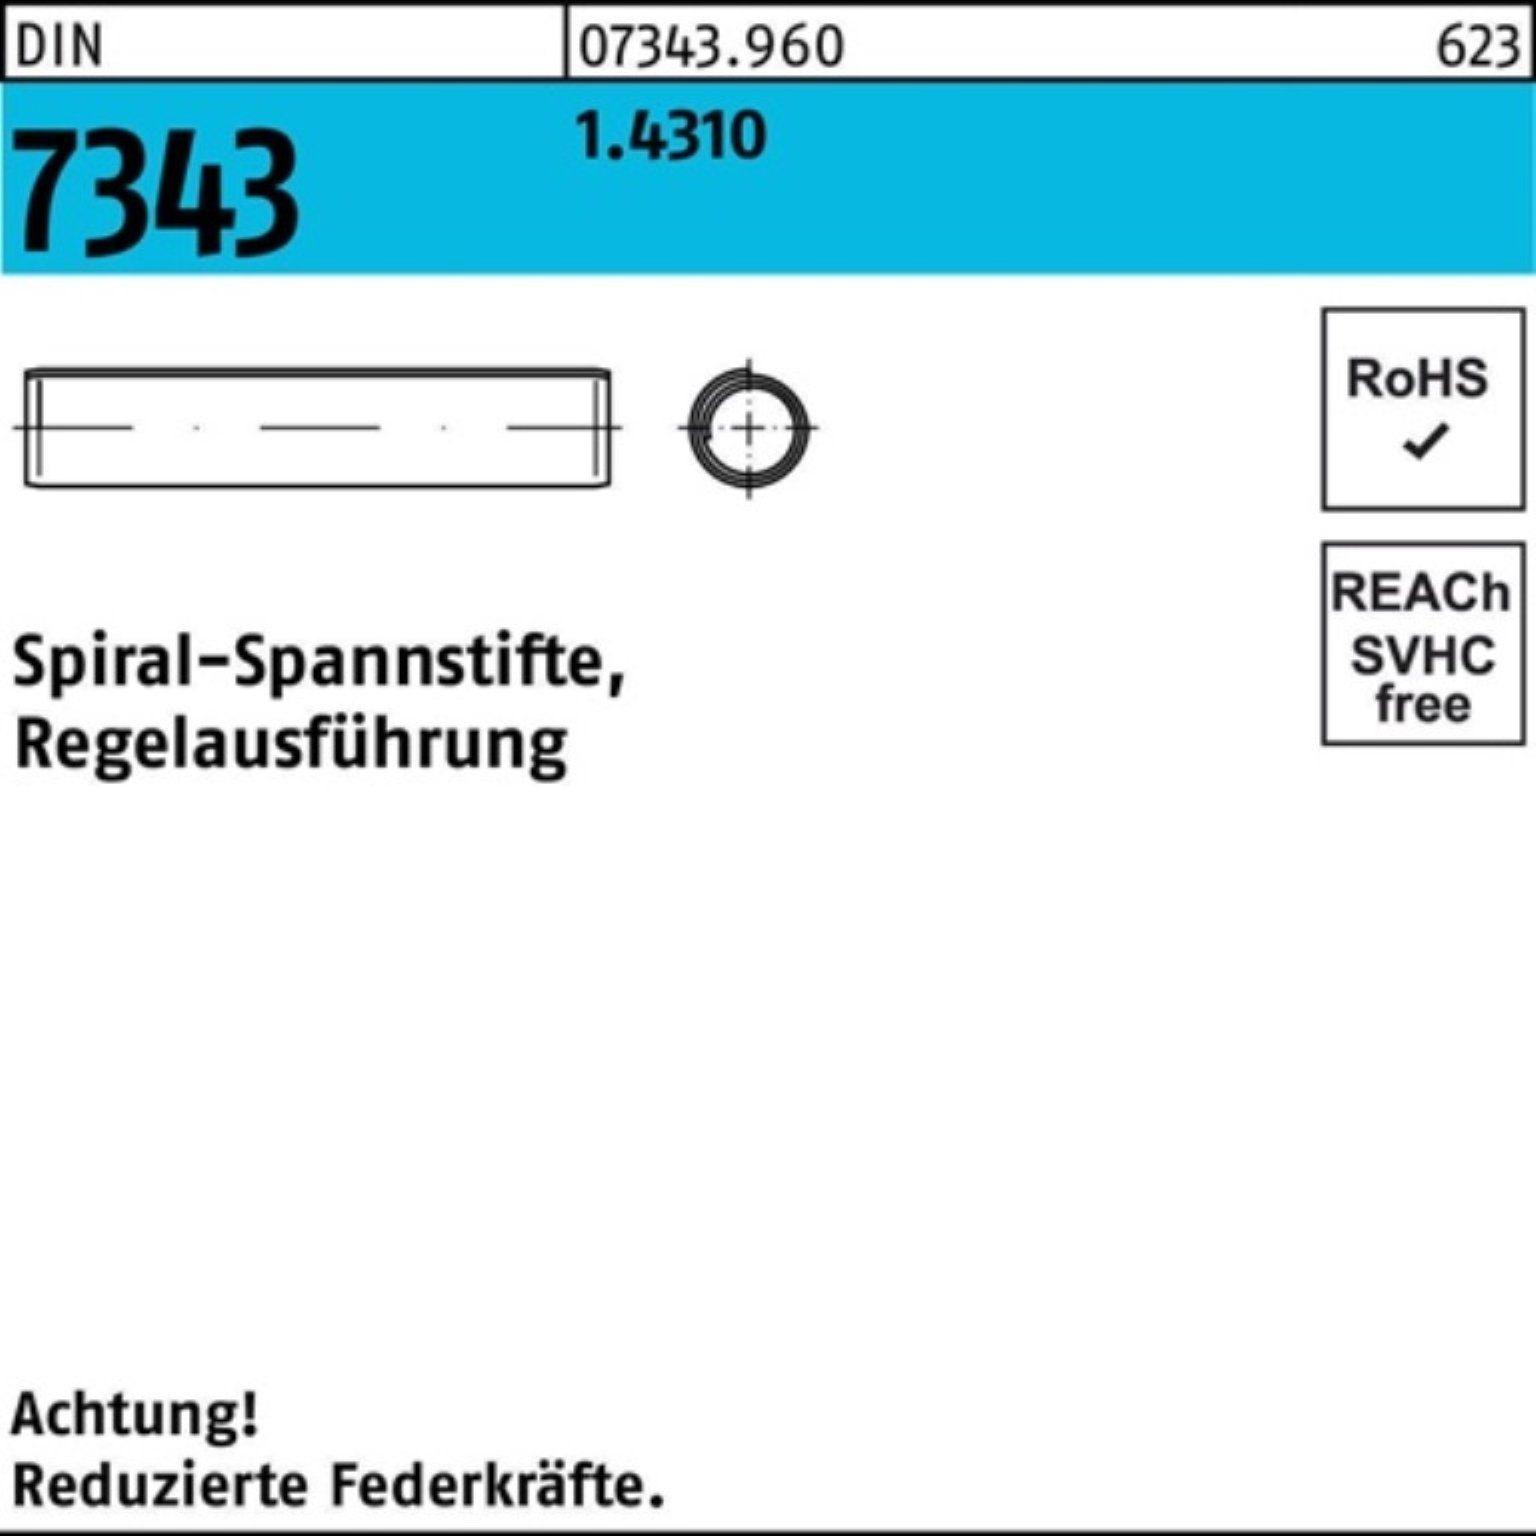 Reyher Spannstift 1000er Pack 8750 Spiralspannstift DIN 14 7343/ISO 3x Regelausf. 1.4310